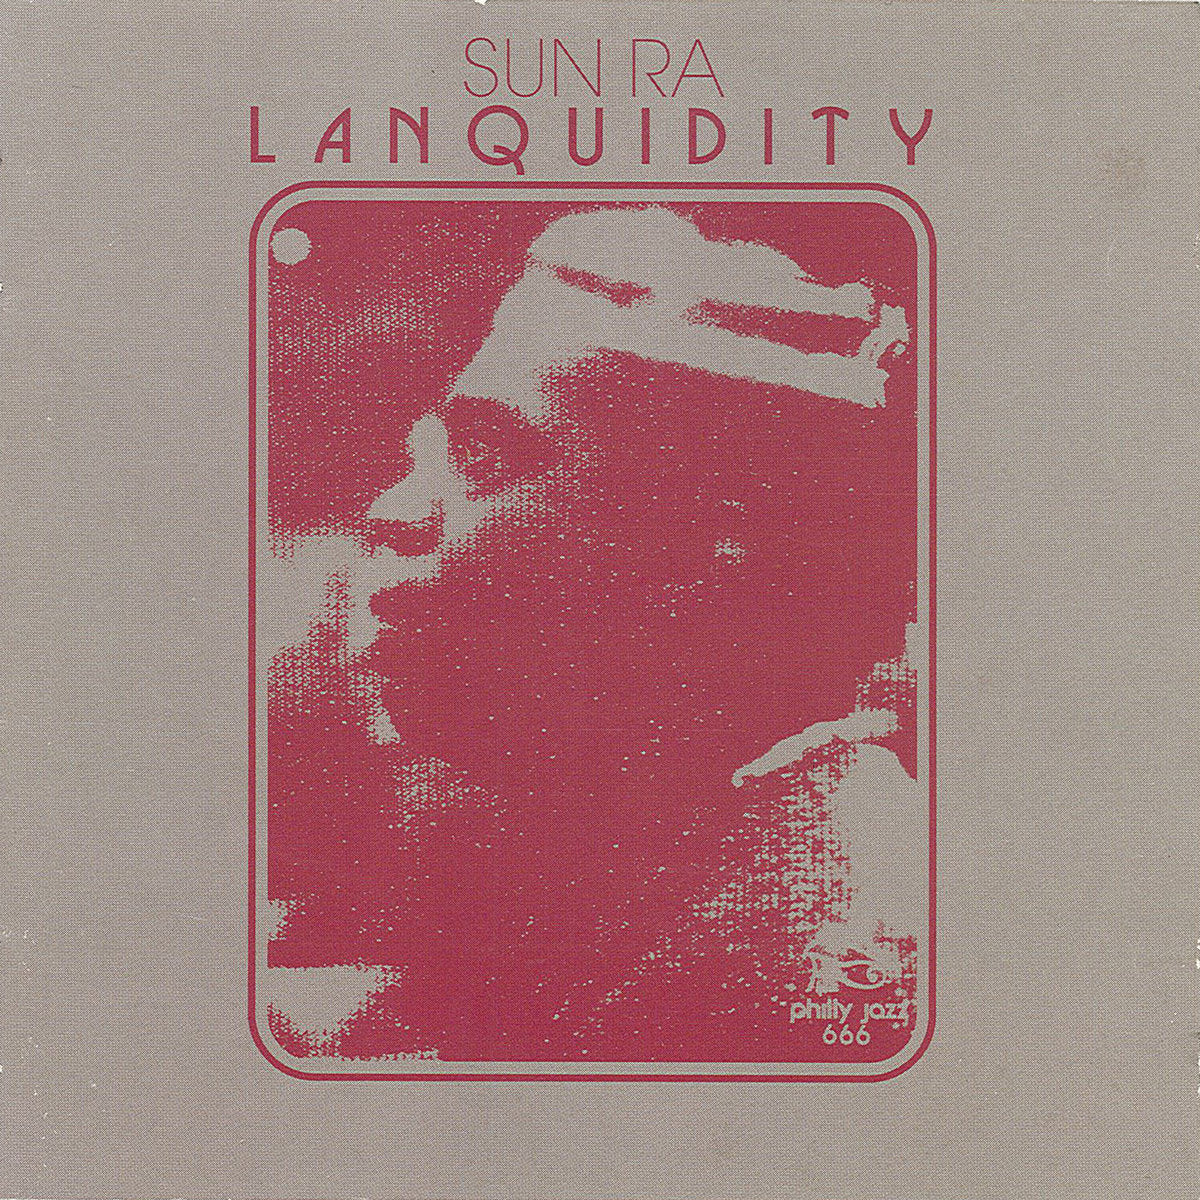 Lanquidity (New 4LP Box Set)